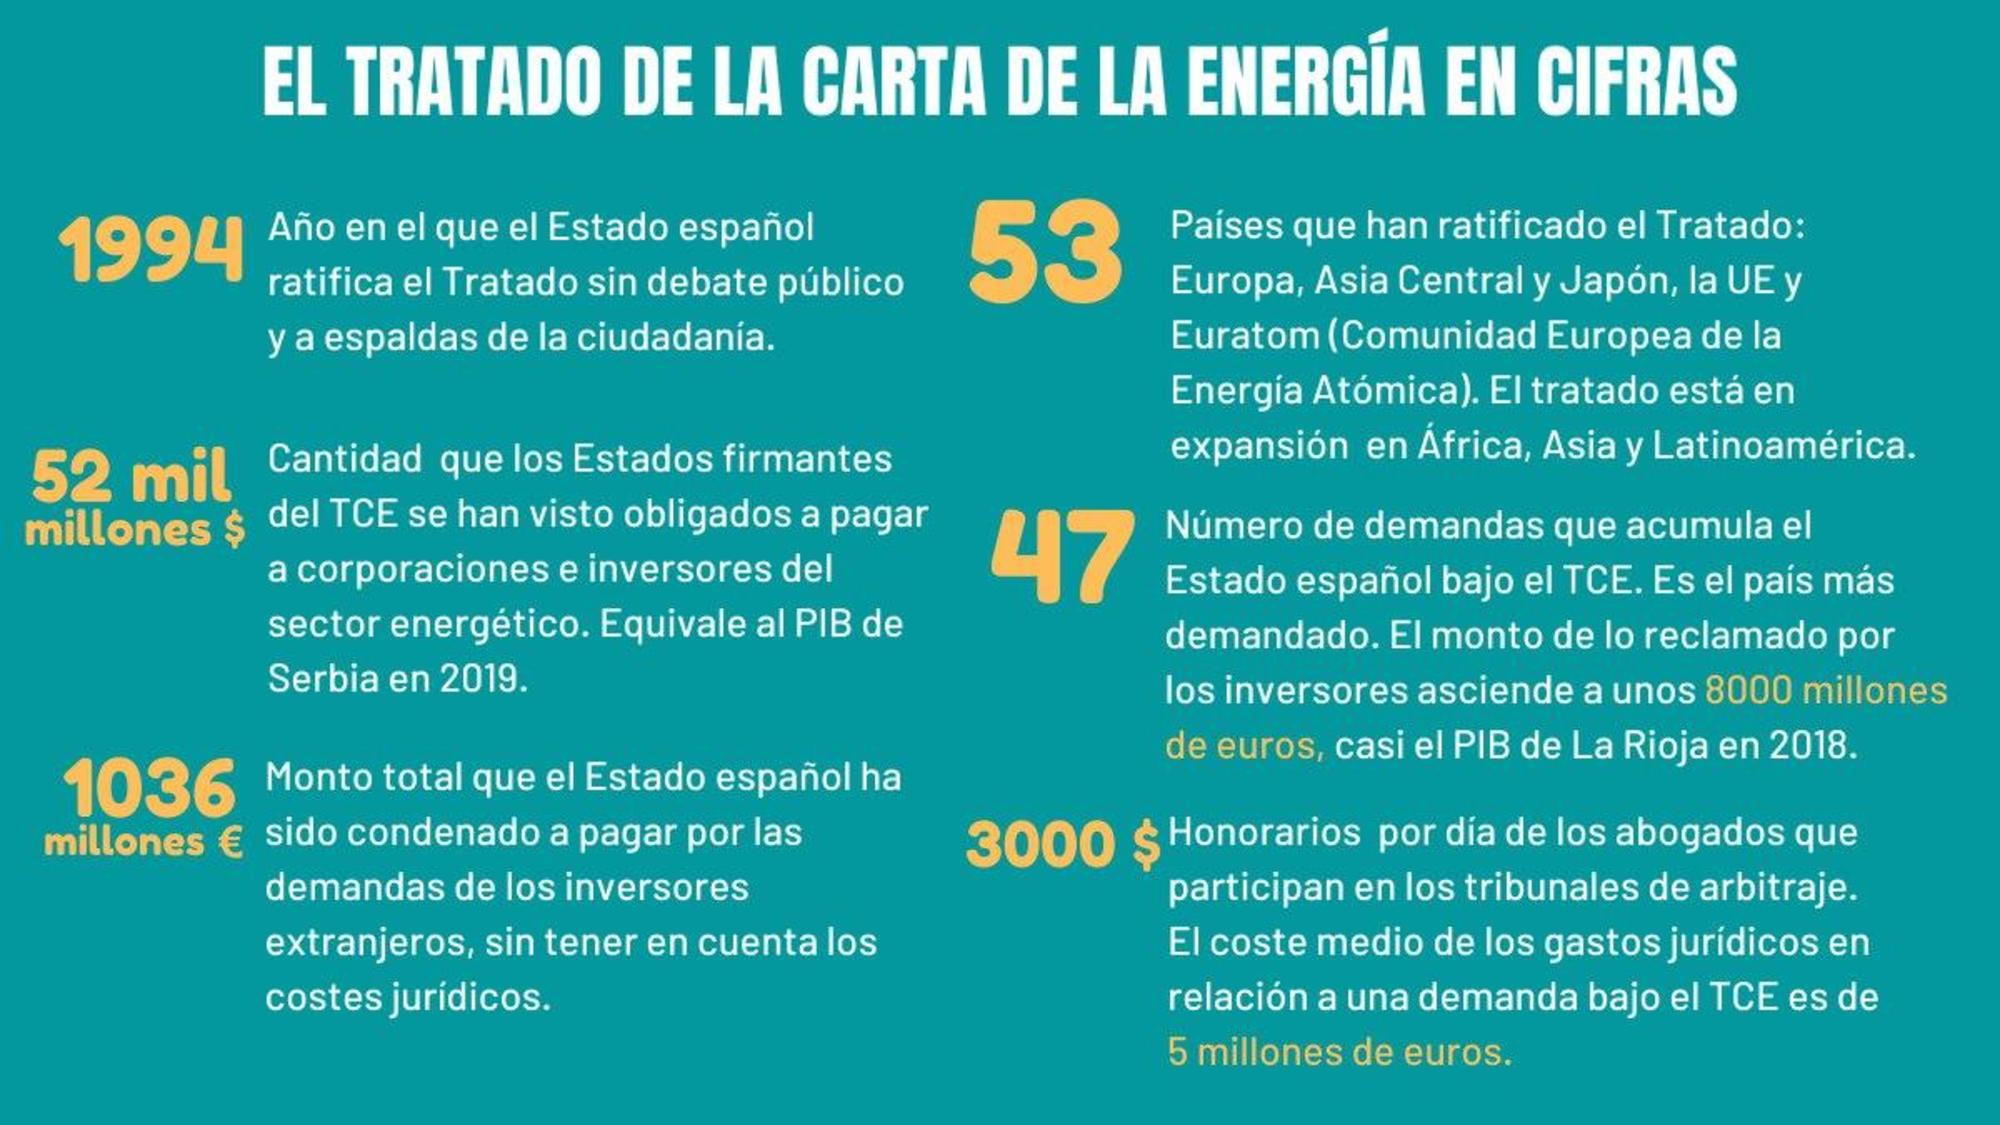 Tratado de la Carta de la Energía en datos